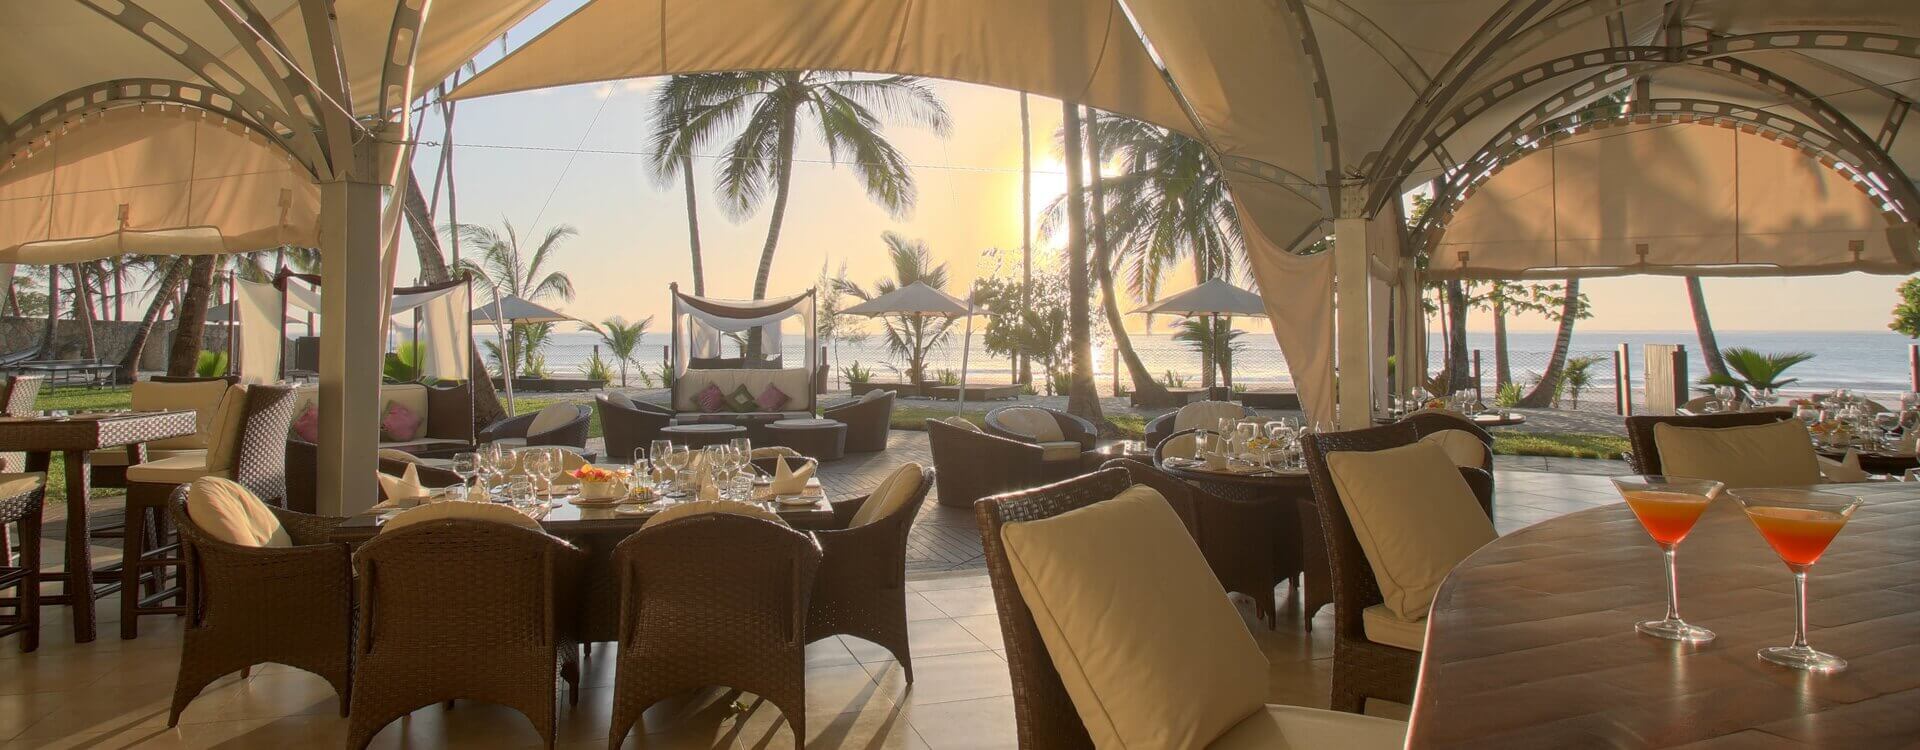 Almanara Luxury Garden Villas and Boutique Hotel Beach - Sails Restaurant